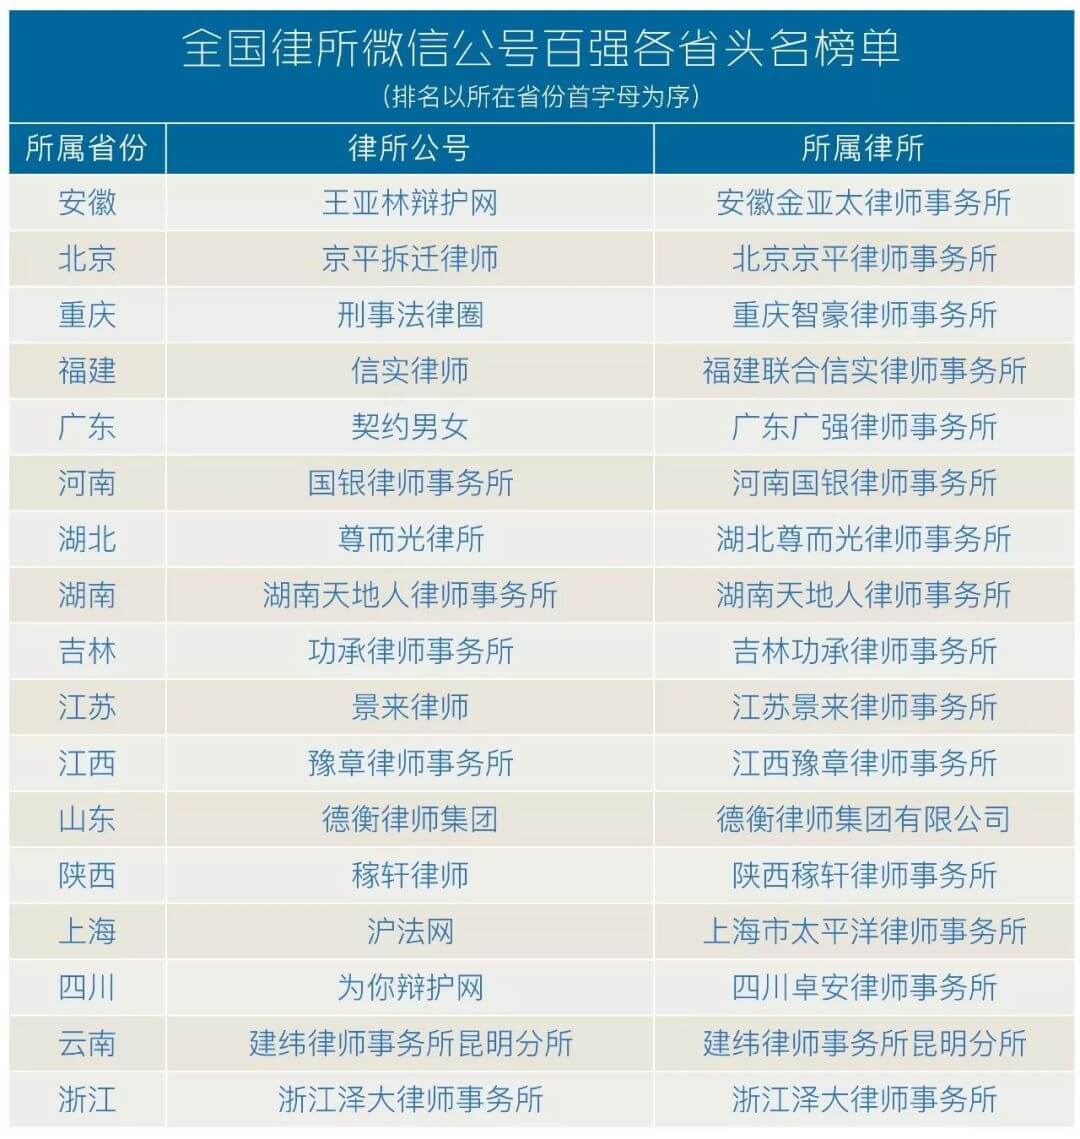 “泽大律师事务所”微信公众号，居全国律所榜单第35位，列浙江律所榜首。